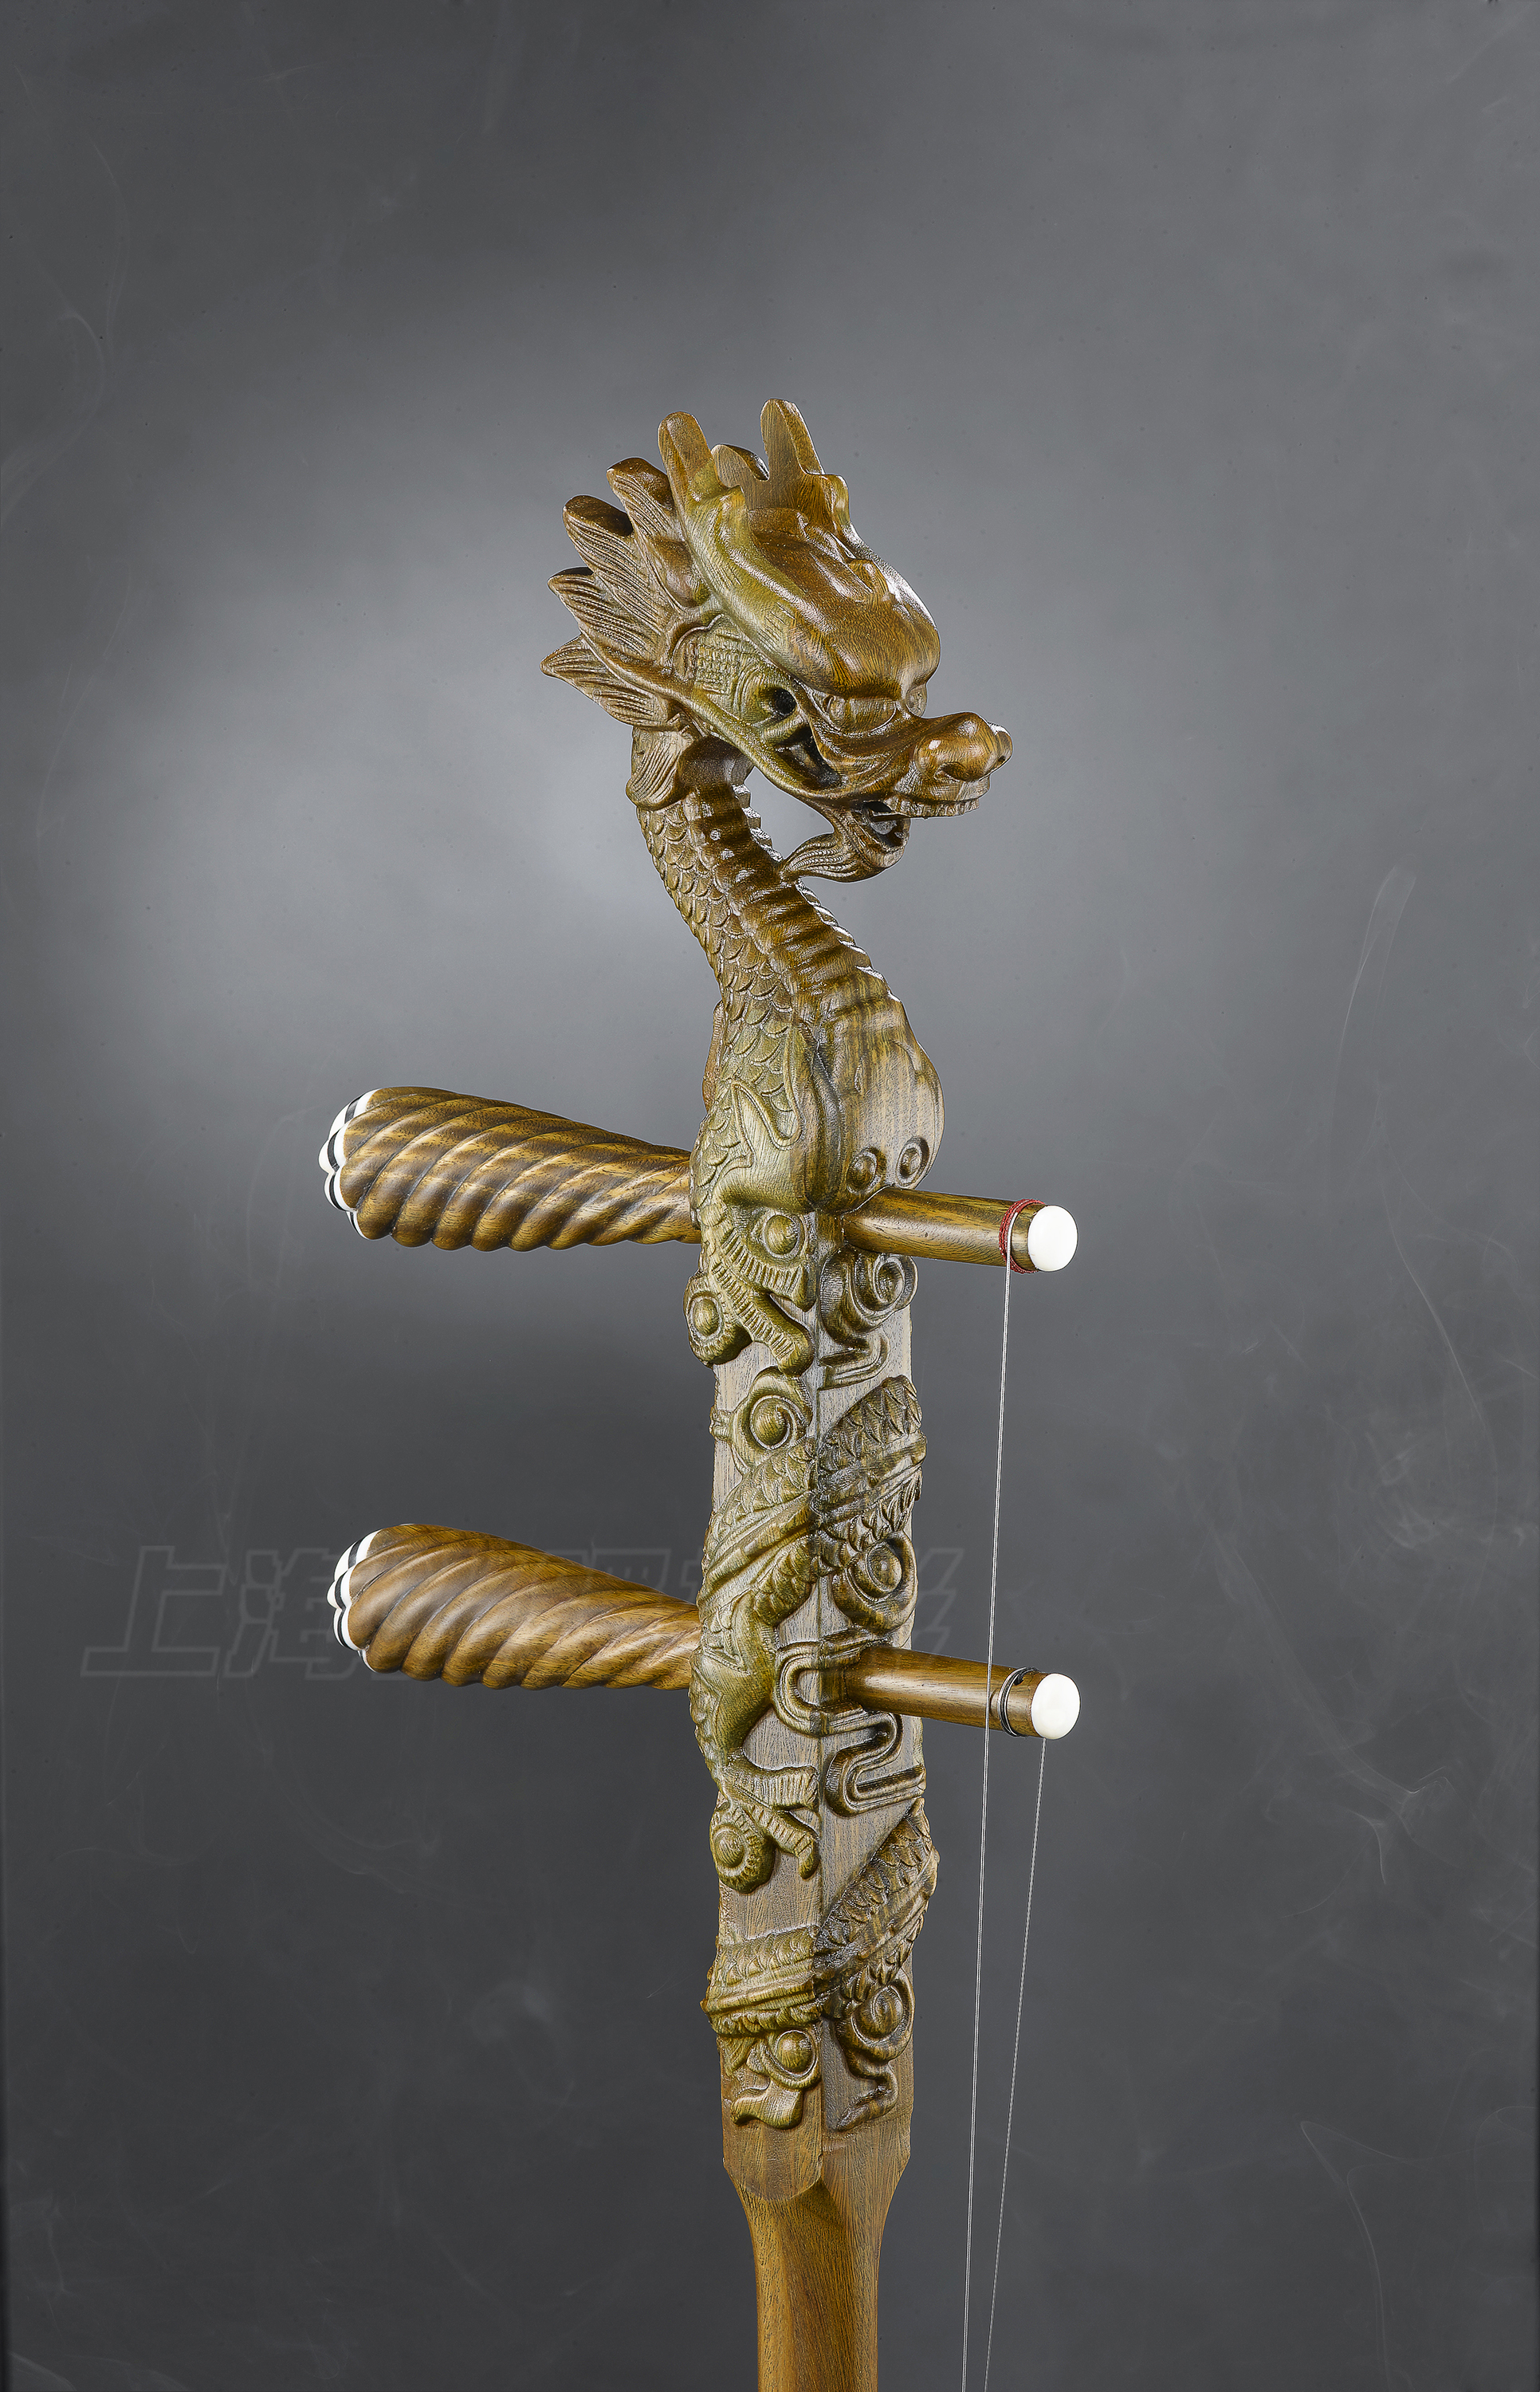 二胡(erhu fiddle),始于唐朝,至今已有一千多年的历史